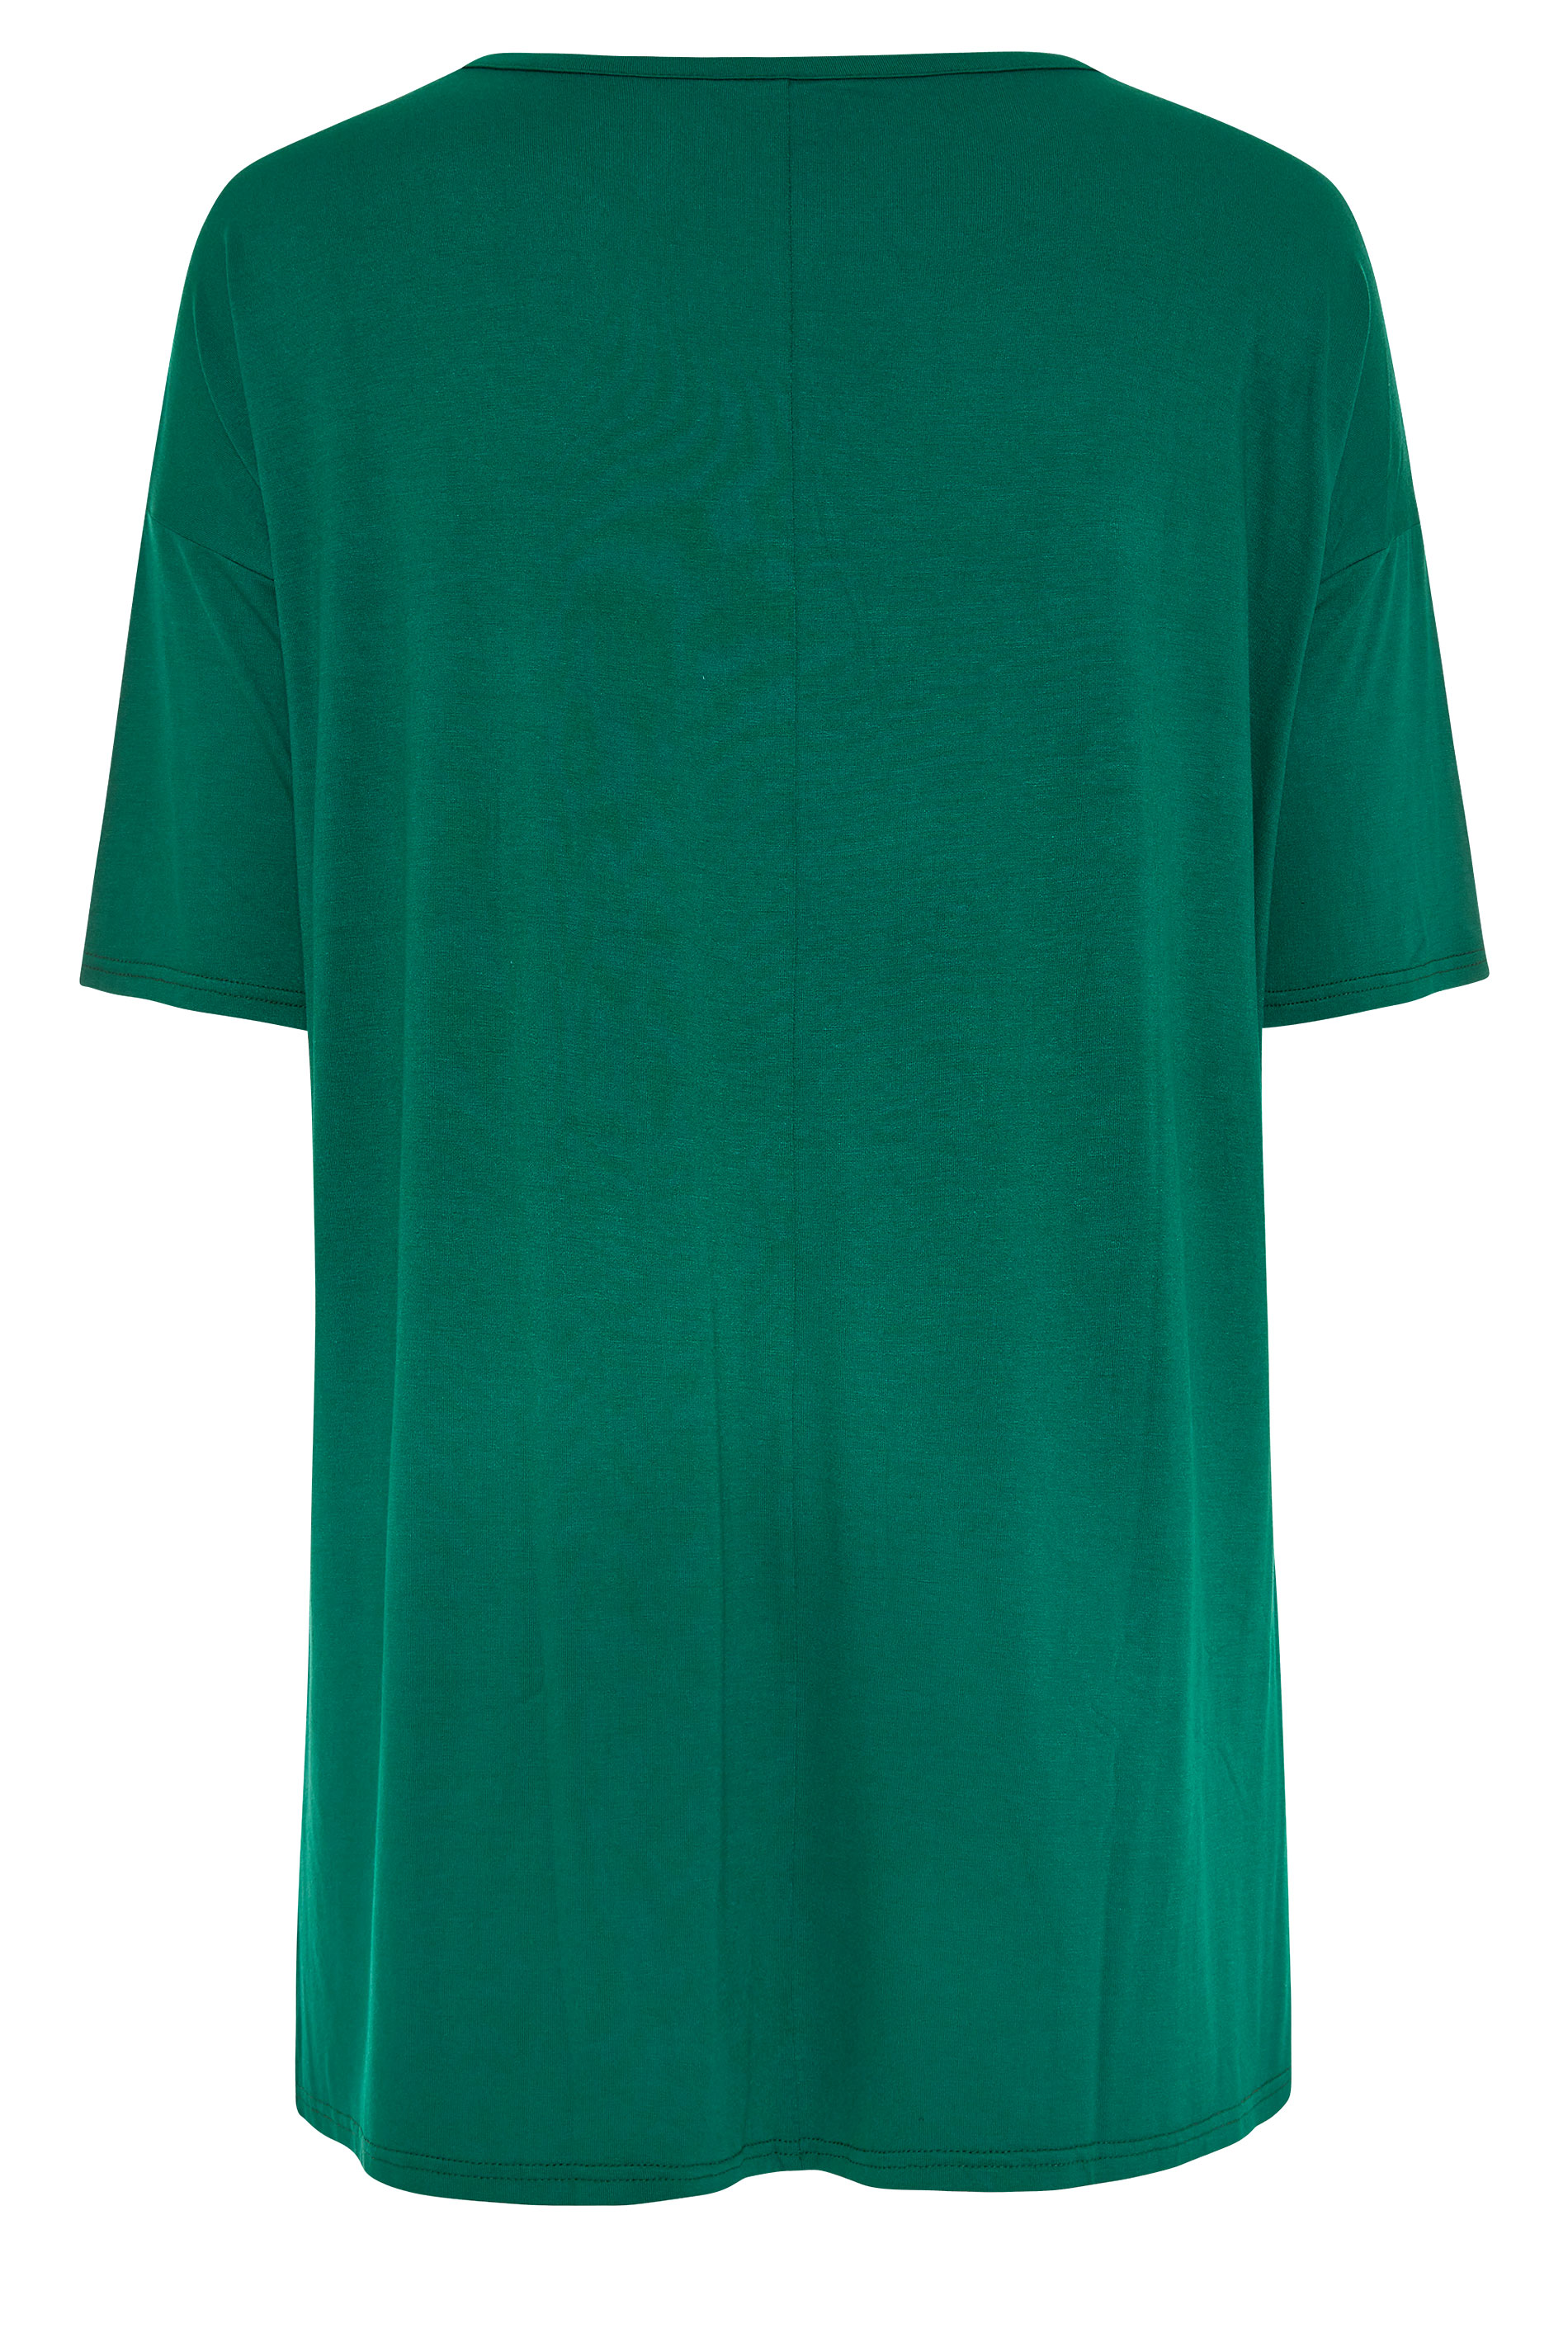 Grande taille  Tops Grande taille  T-Shirts | T-Shirt Vert Émeraude Style Oversize en Jersey - ML68225